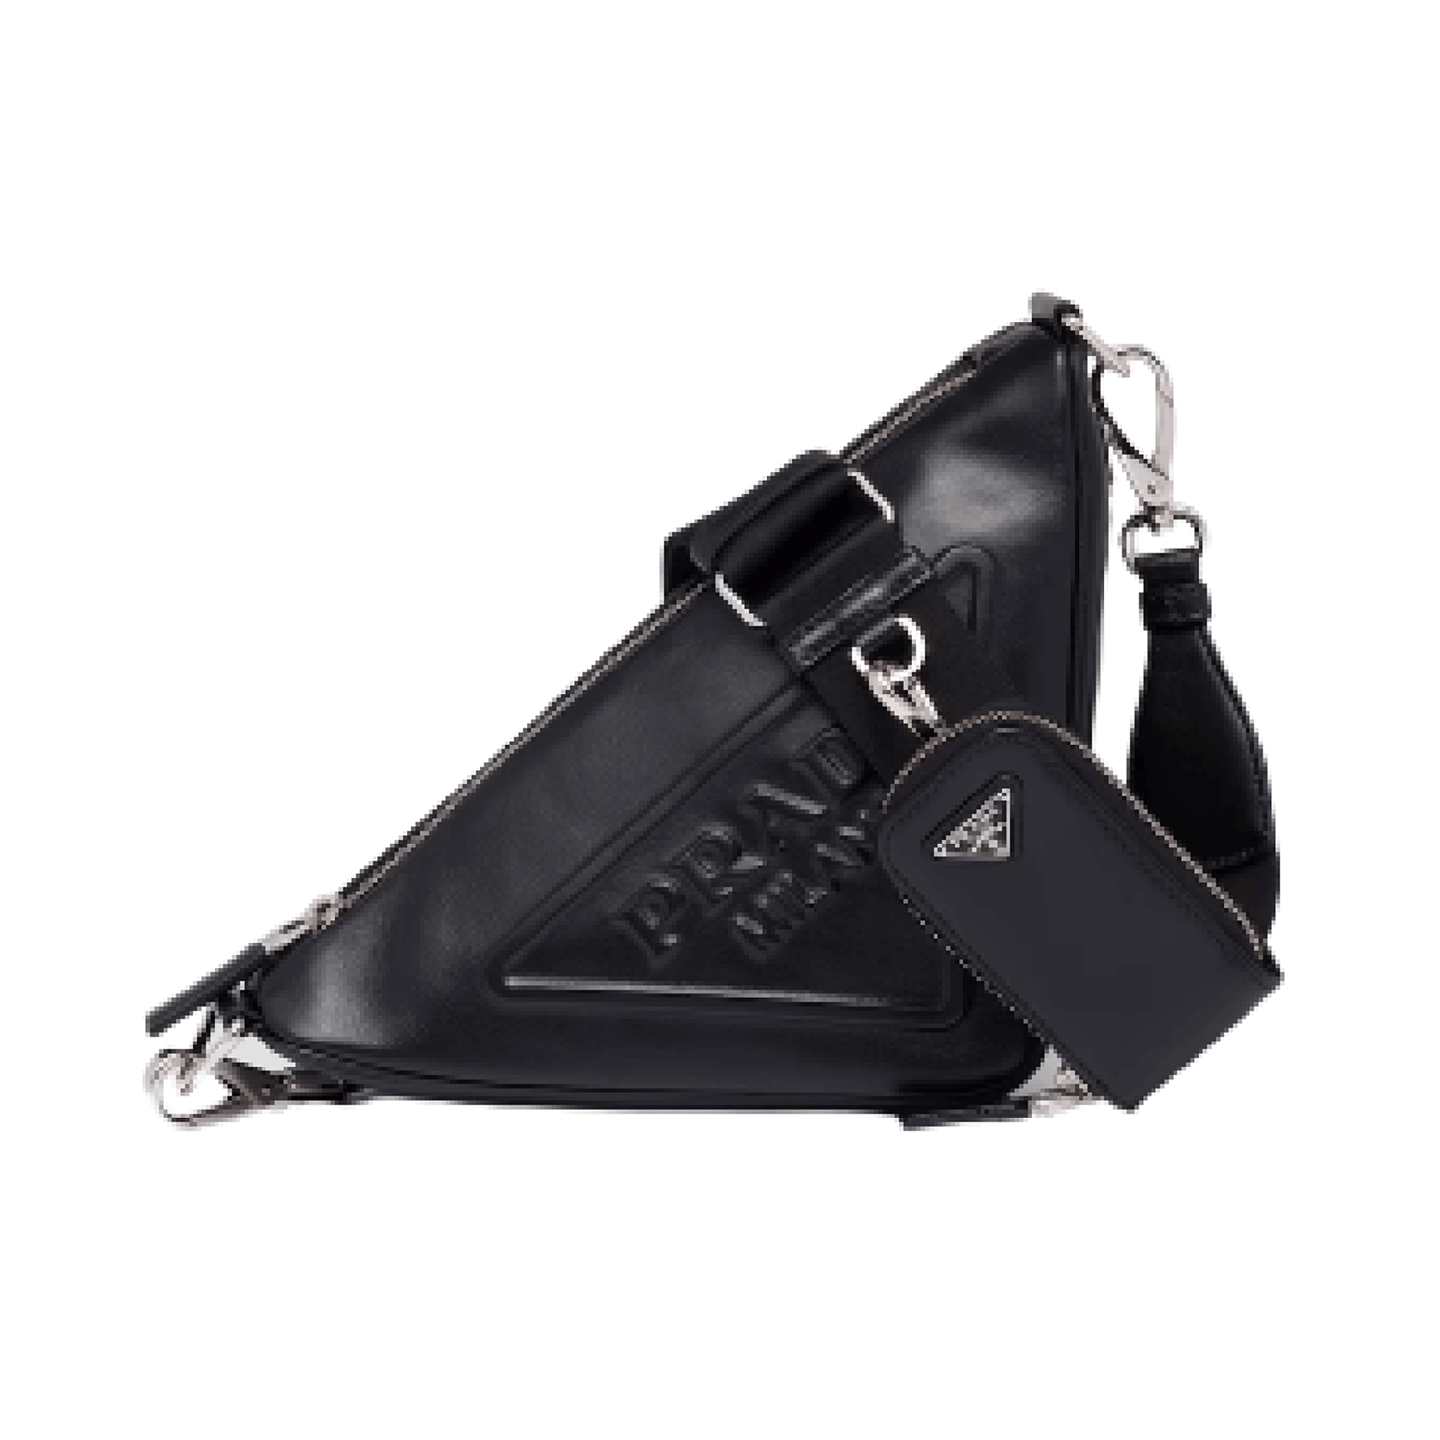 Black Prada Triangle Leather Shoulder Bag